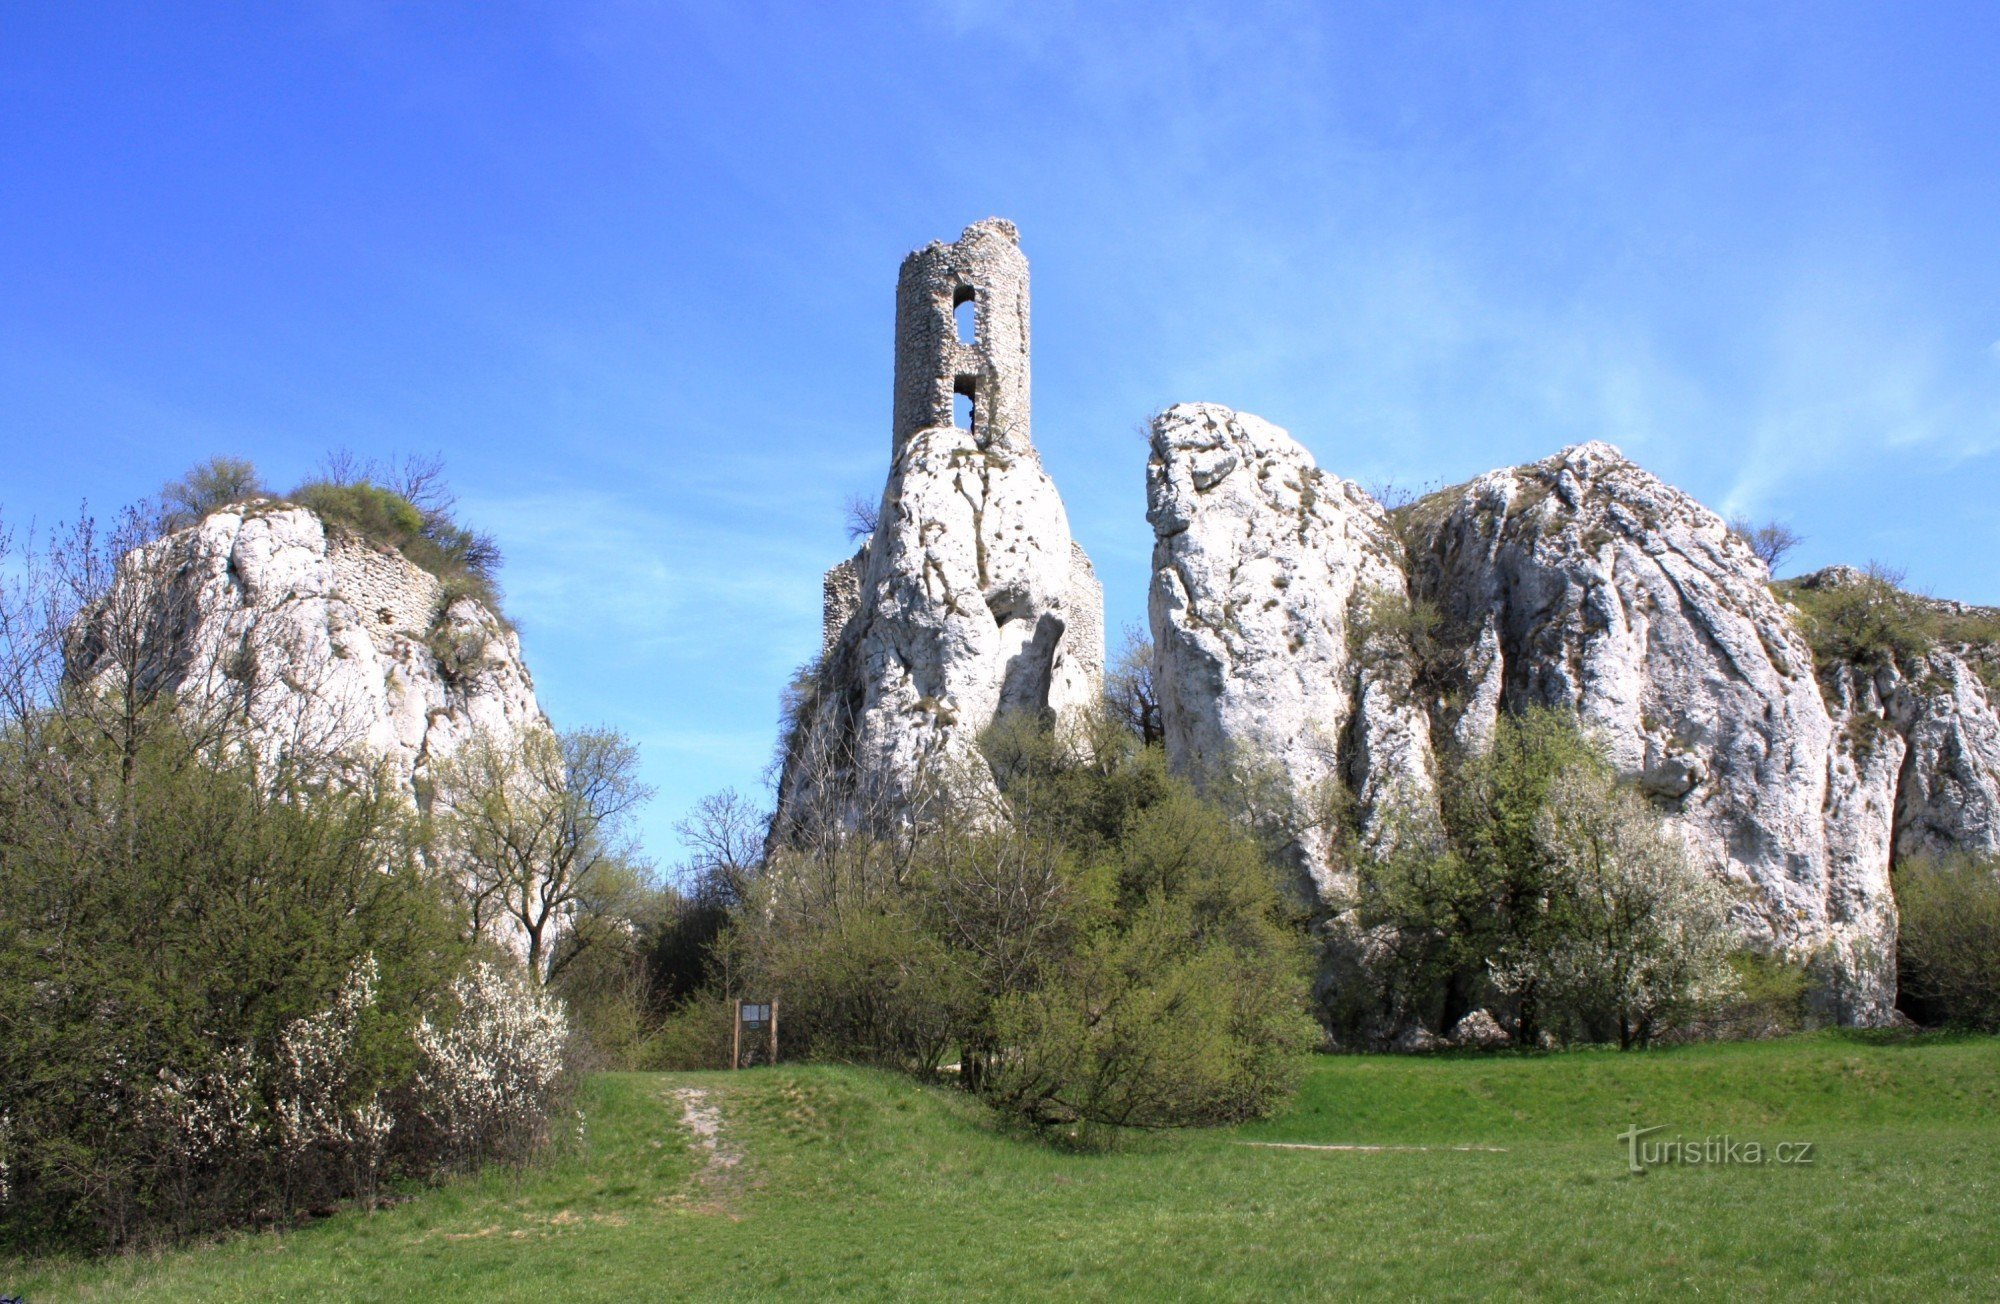 Vista geral das torres rochosas do prado